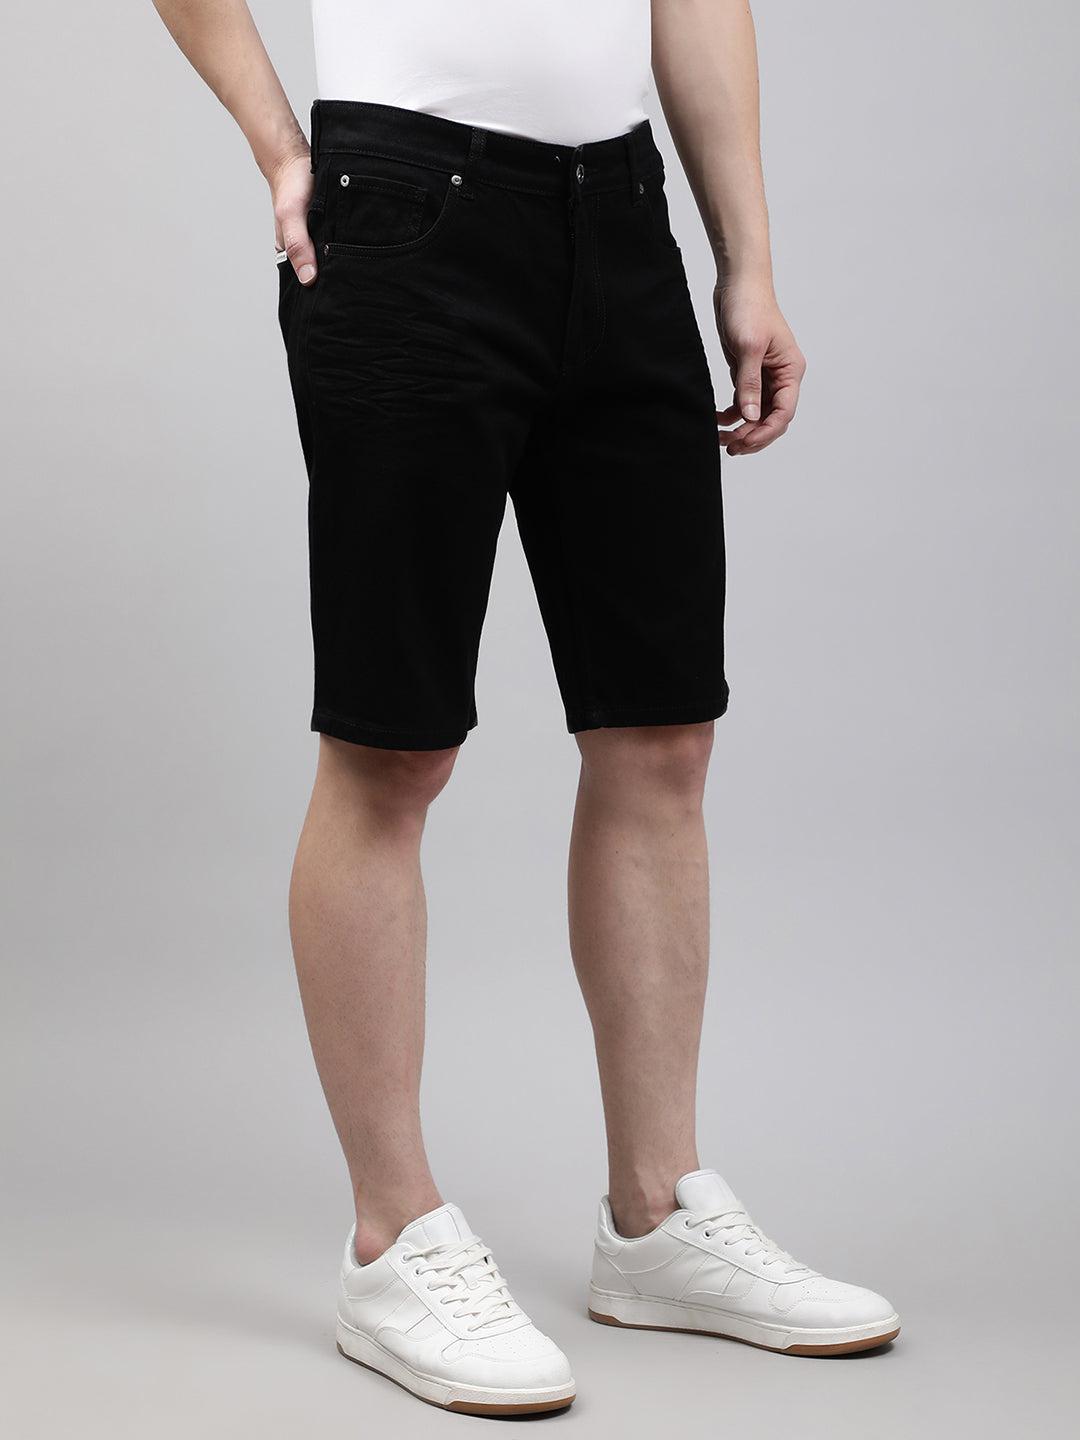 lindbergh-men-black-solid-regular-fit-shorts